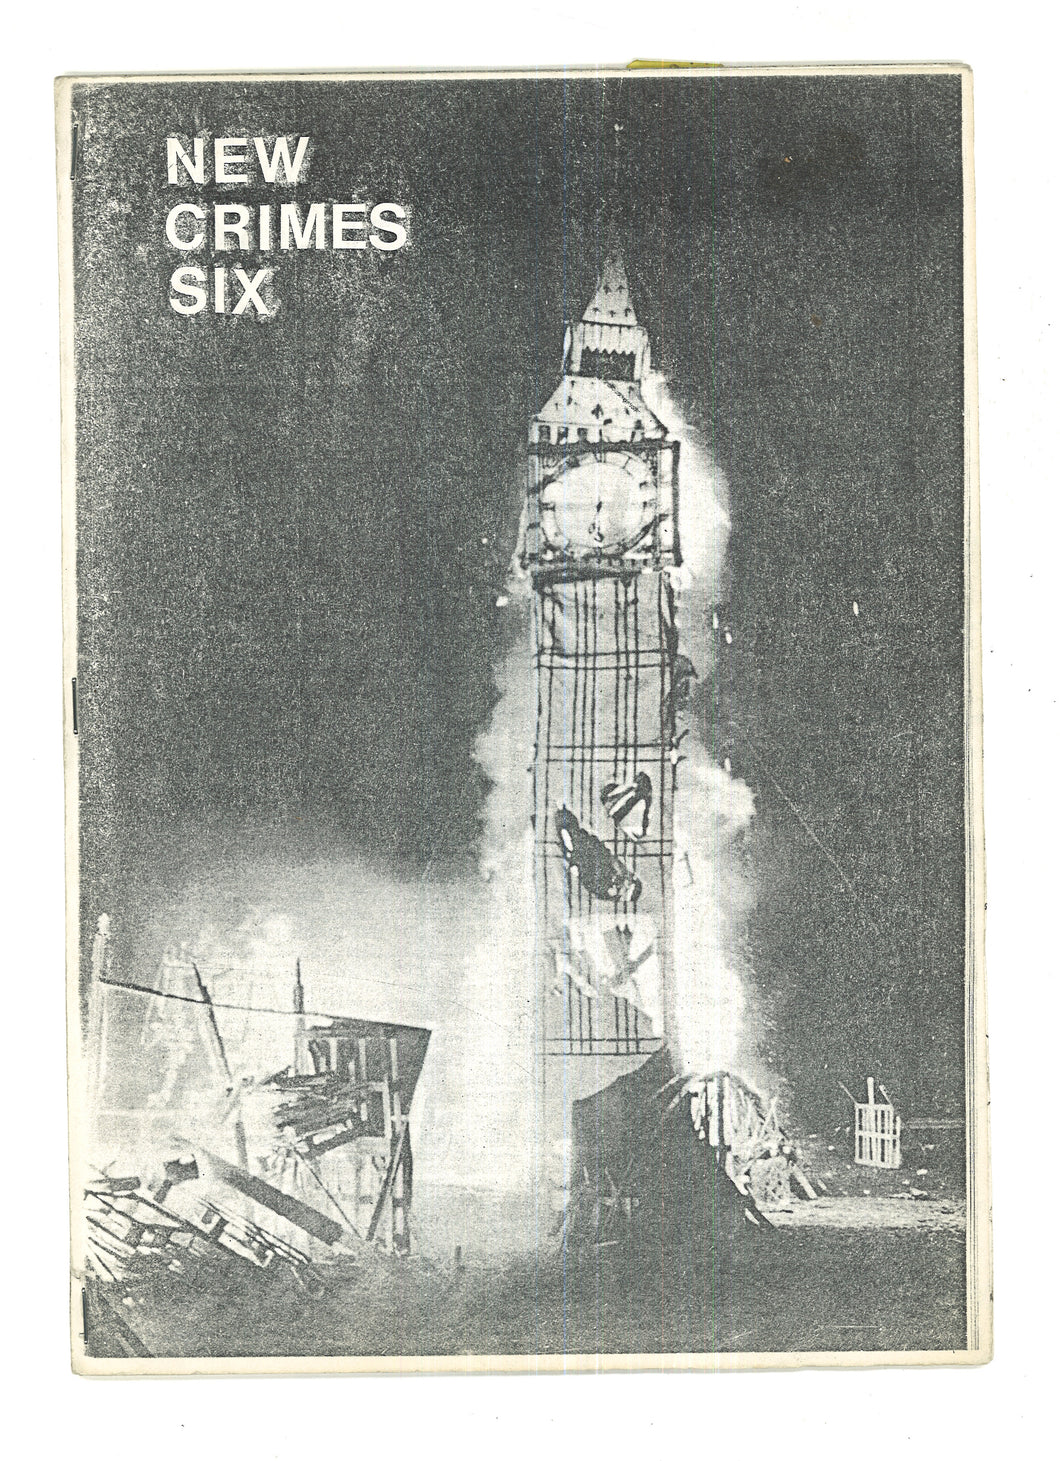 New Crimes Six, 1983